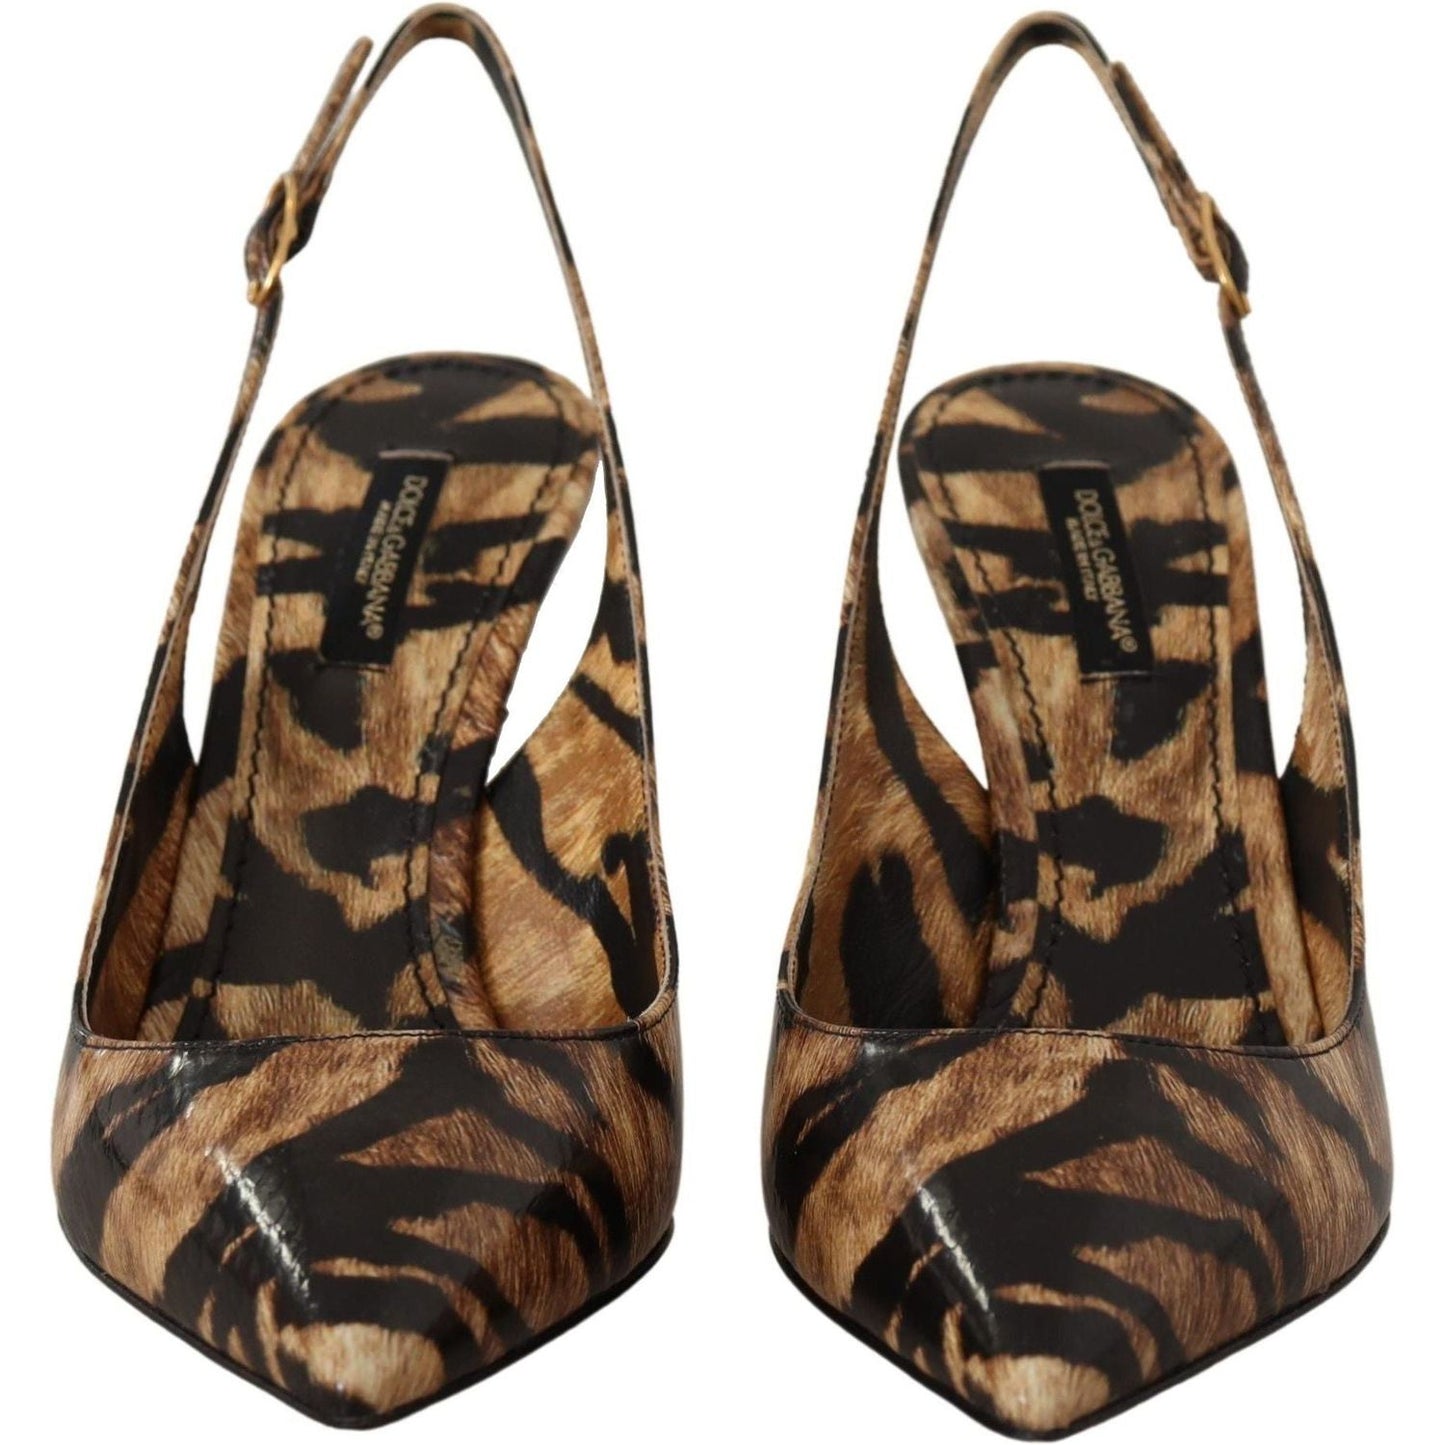 Dolce & Gabbana Tiger Pattern Slingback Heels Pumps brown-slingbacks-leather-tiger-shoes